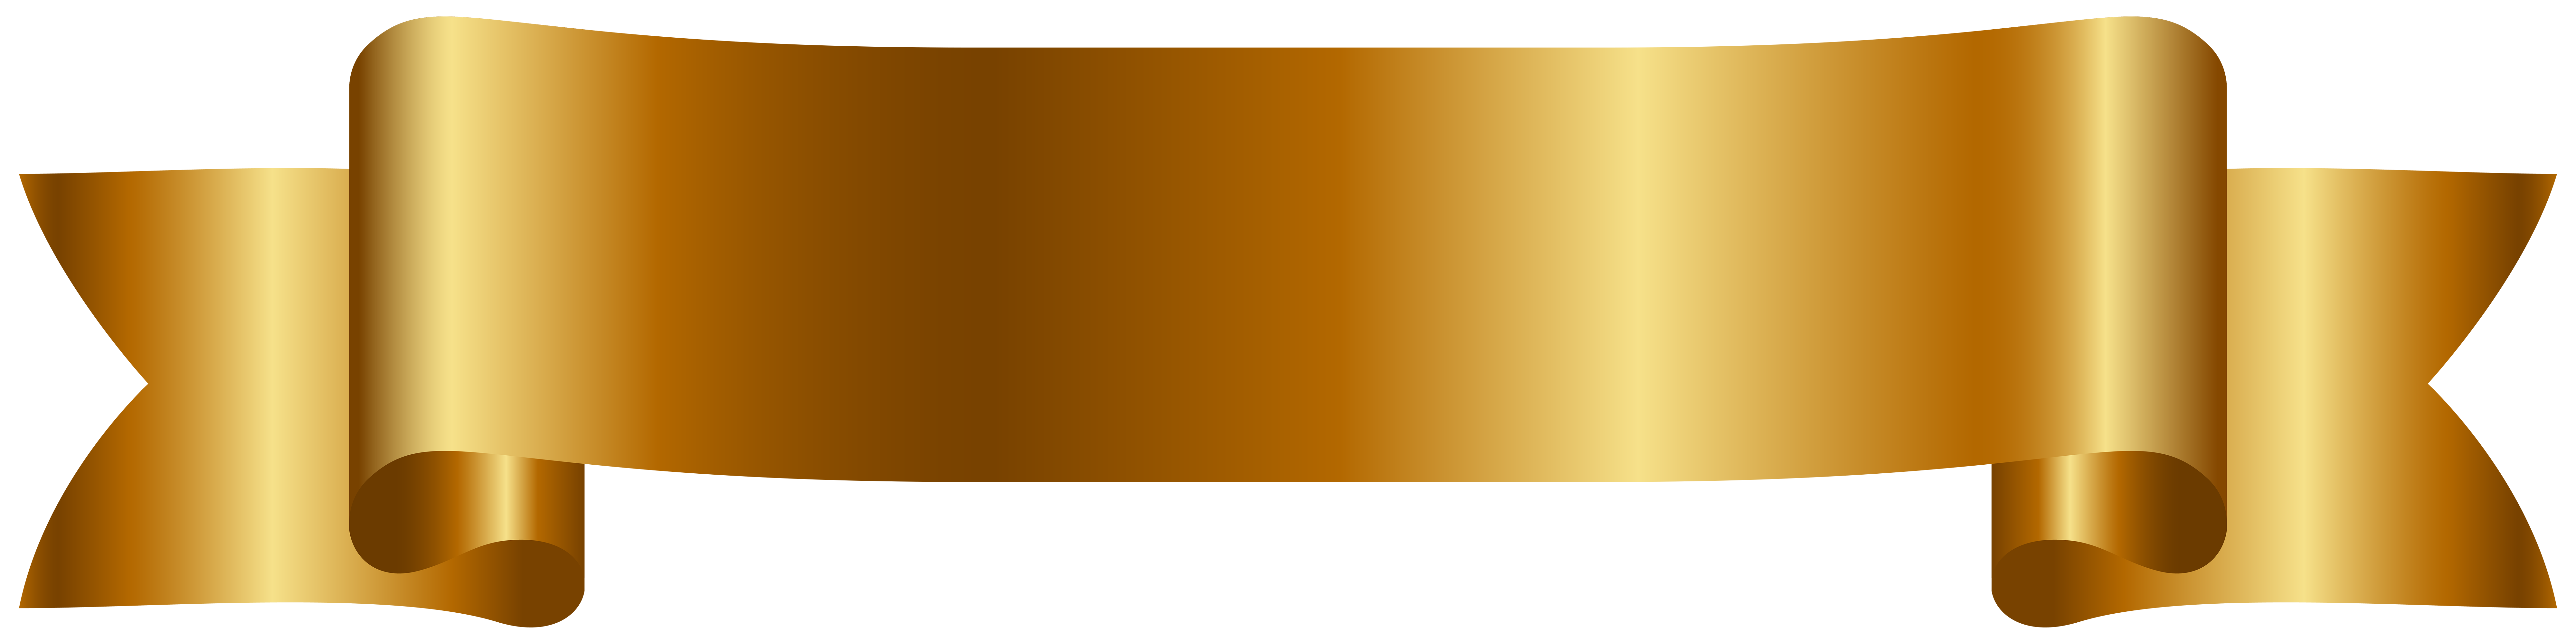 Golden Banner Free PNG Clip Art Image 